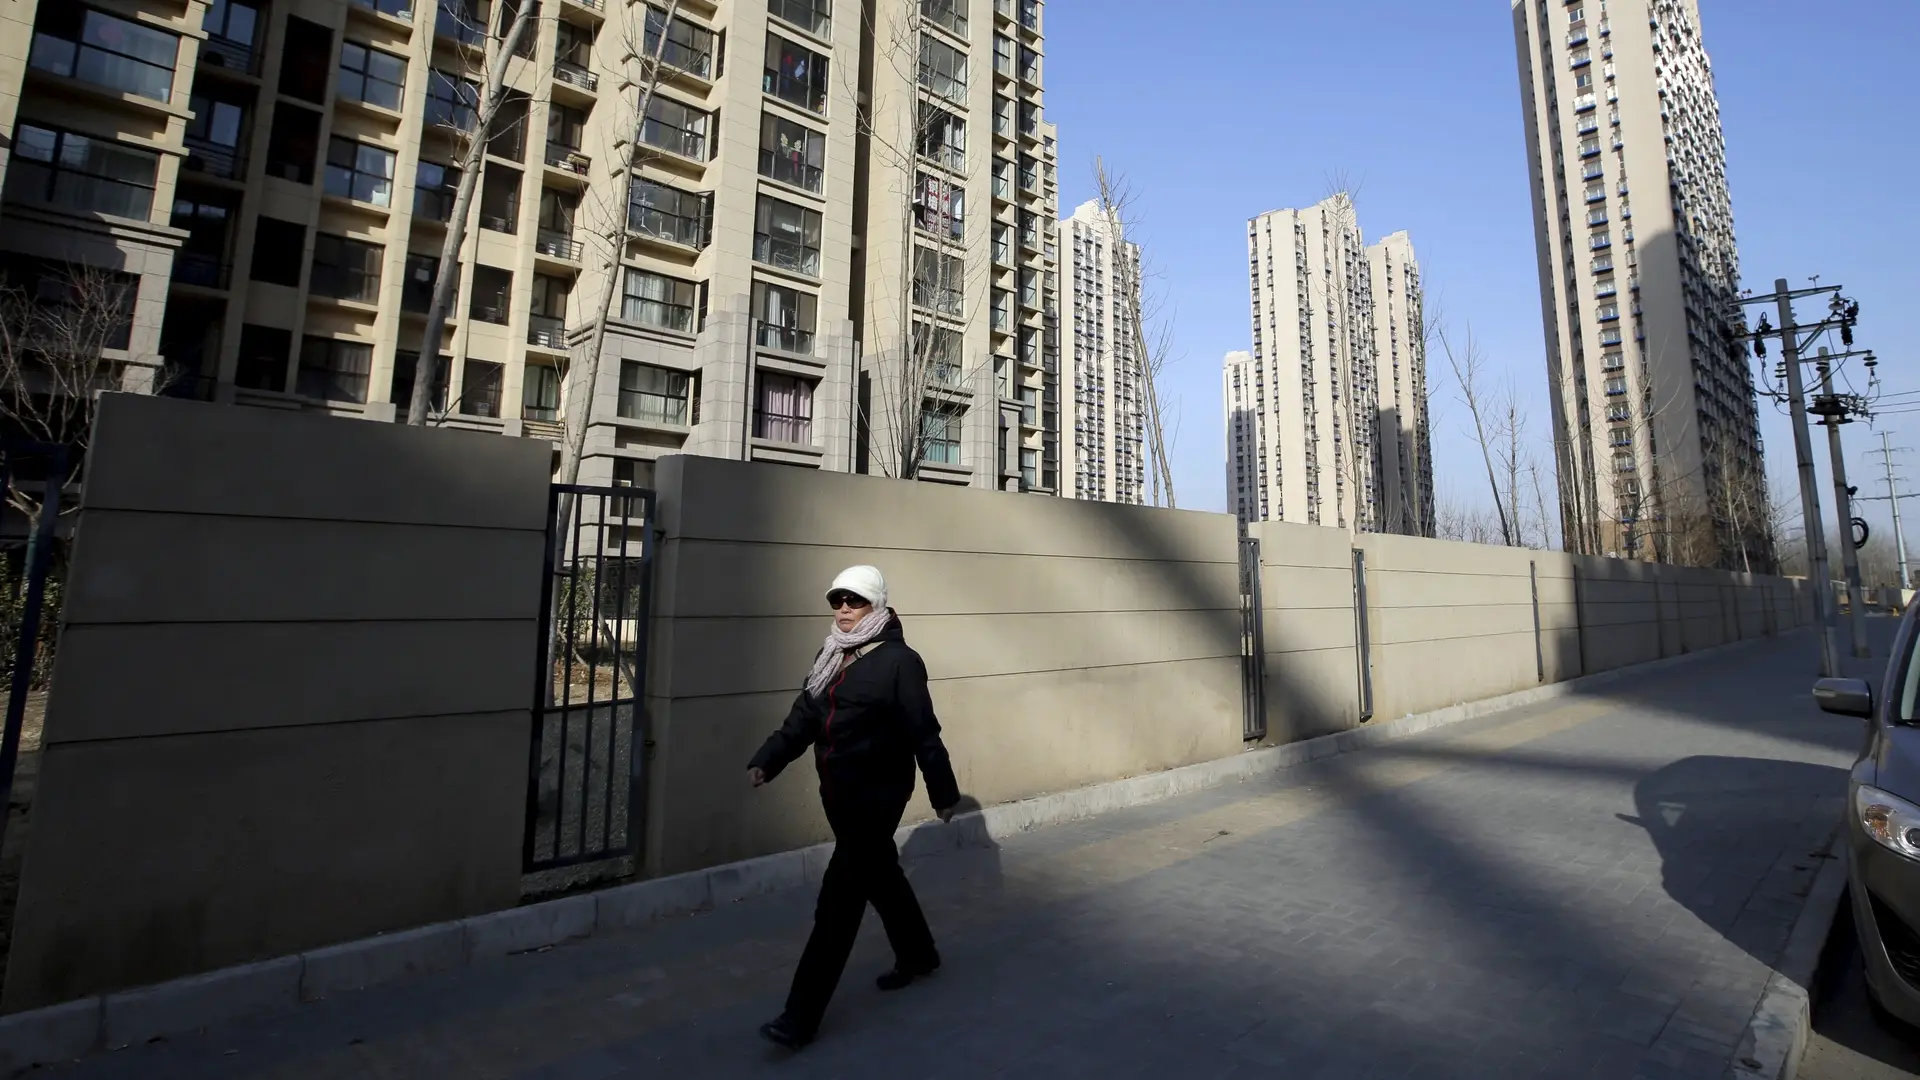 Trung Quốc sẽ có thêm nhiều tập đoàn địa ốc vỡ nợ